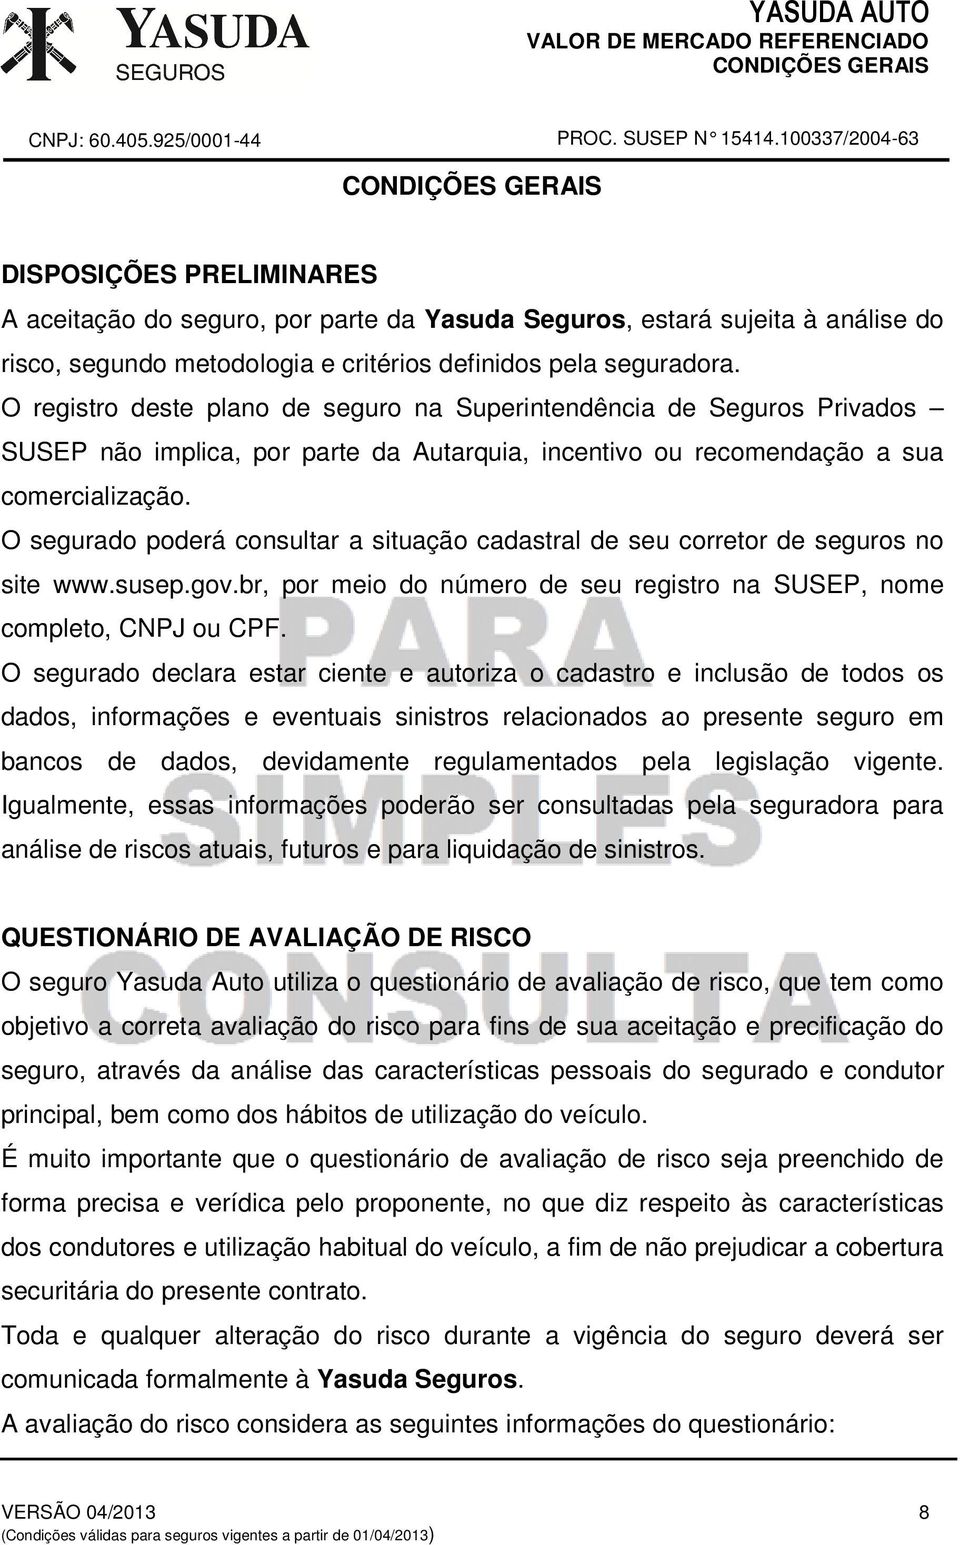 O segurado poderá consultar a situação cadastral de seu corretor de seguros no site www.susep.gov.br, por meio do número de seu registro na SUSEP, nome completo, CNPJ ou CPF.